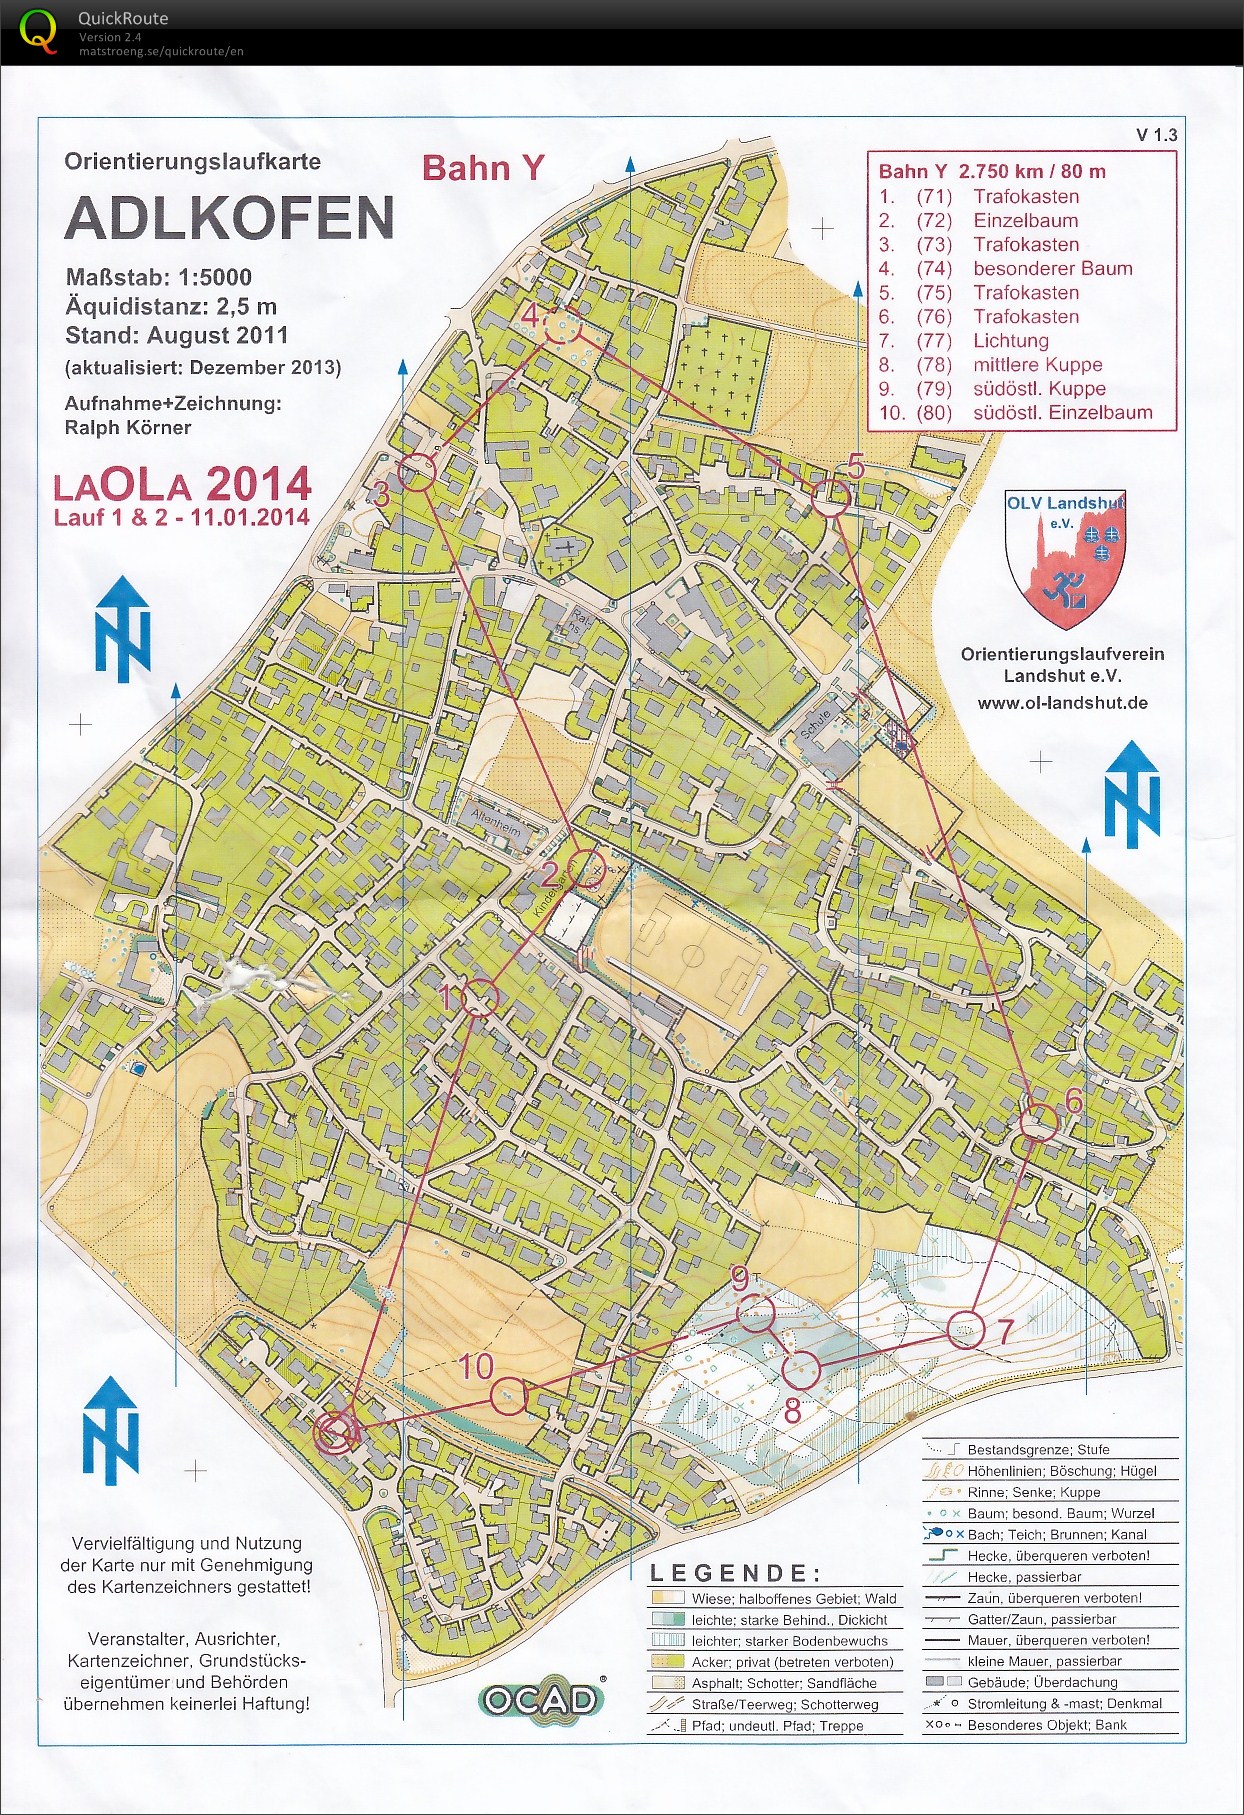 LaOLa 2014 Lauf 1 (11.01.2014)